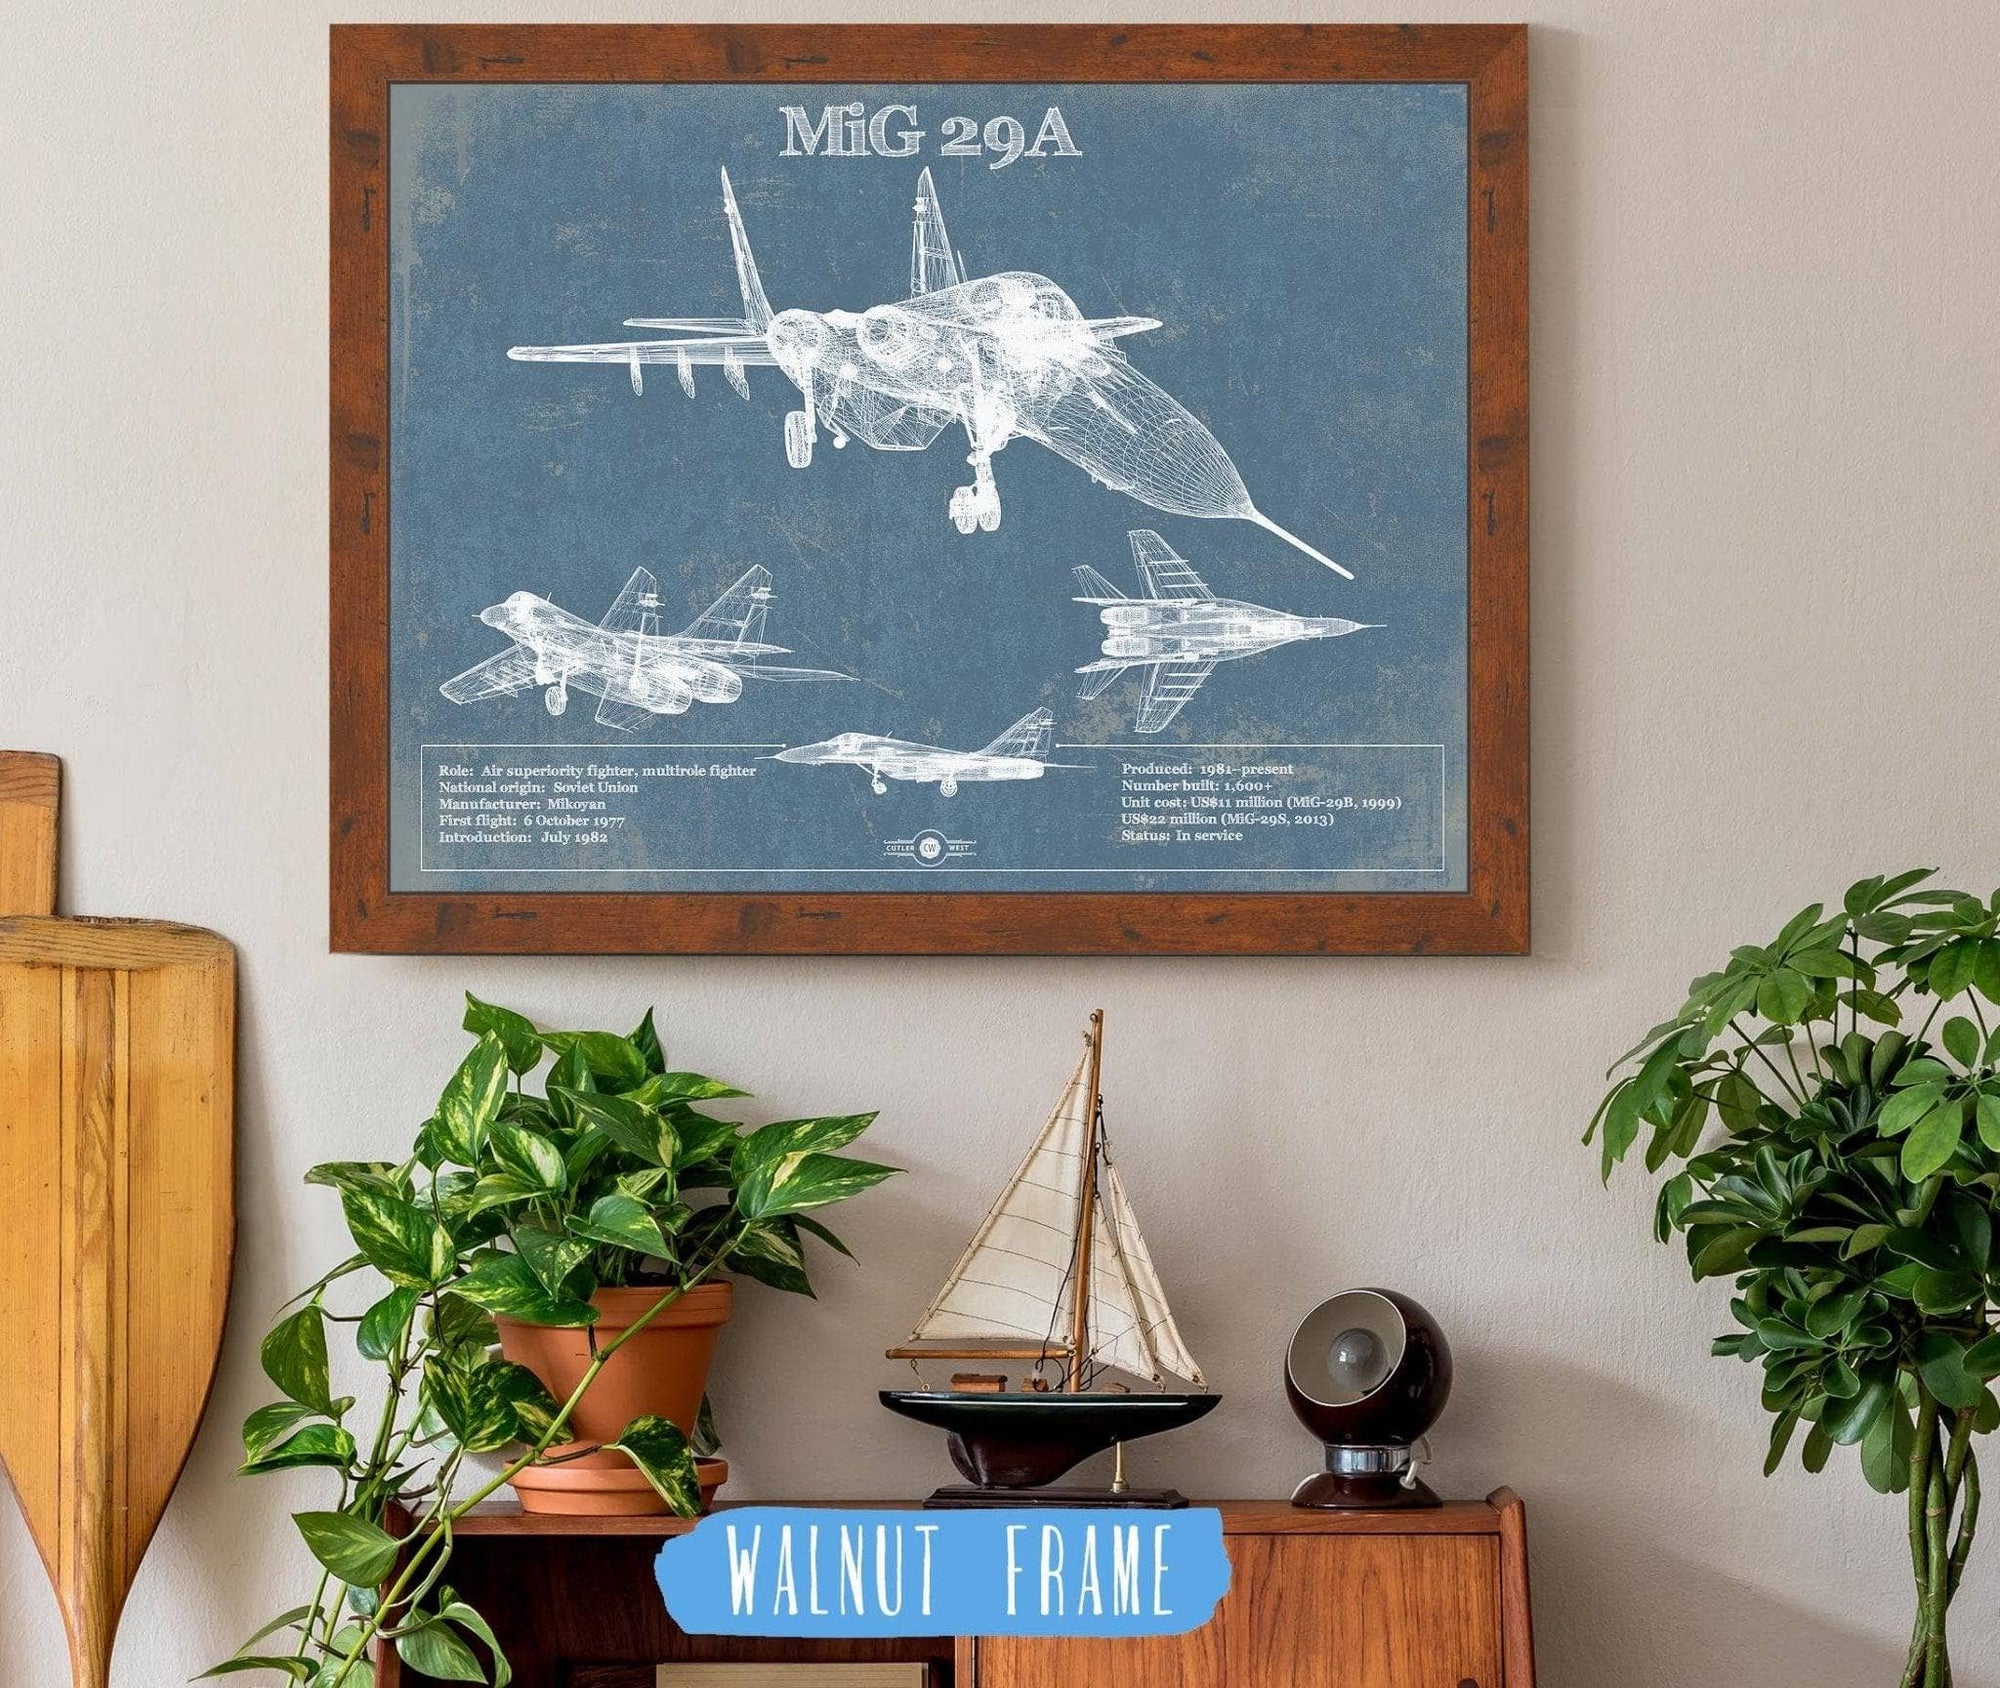 Cutler West Military Aircraft 14" x 11" / Walnut Frame MiG 29A Patent Blueprint Original Design Russian Jet Wall Art 833447939_73862